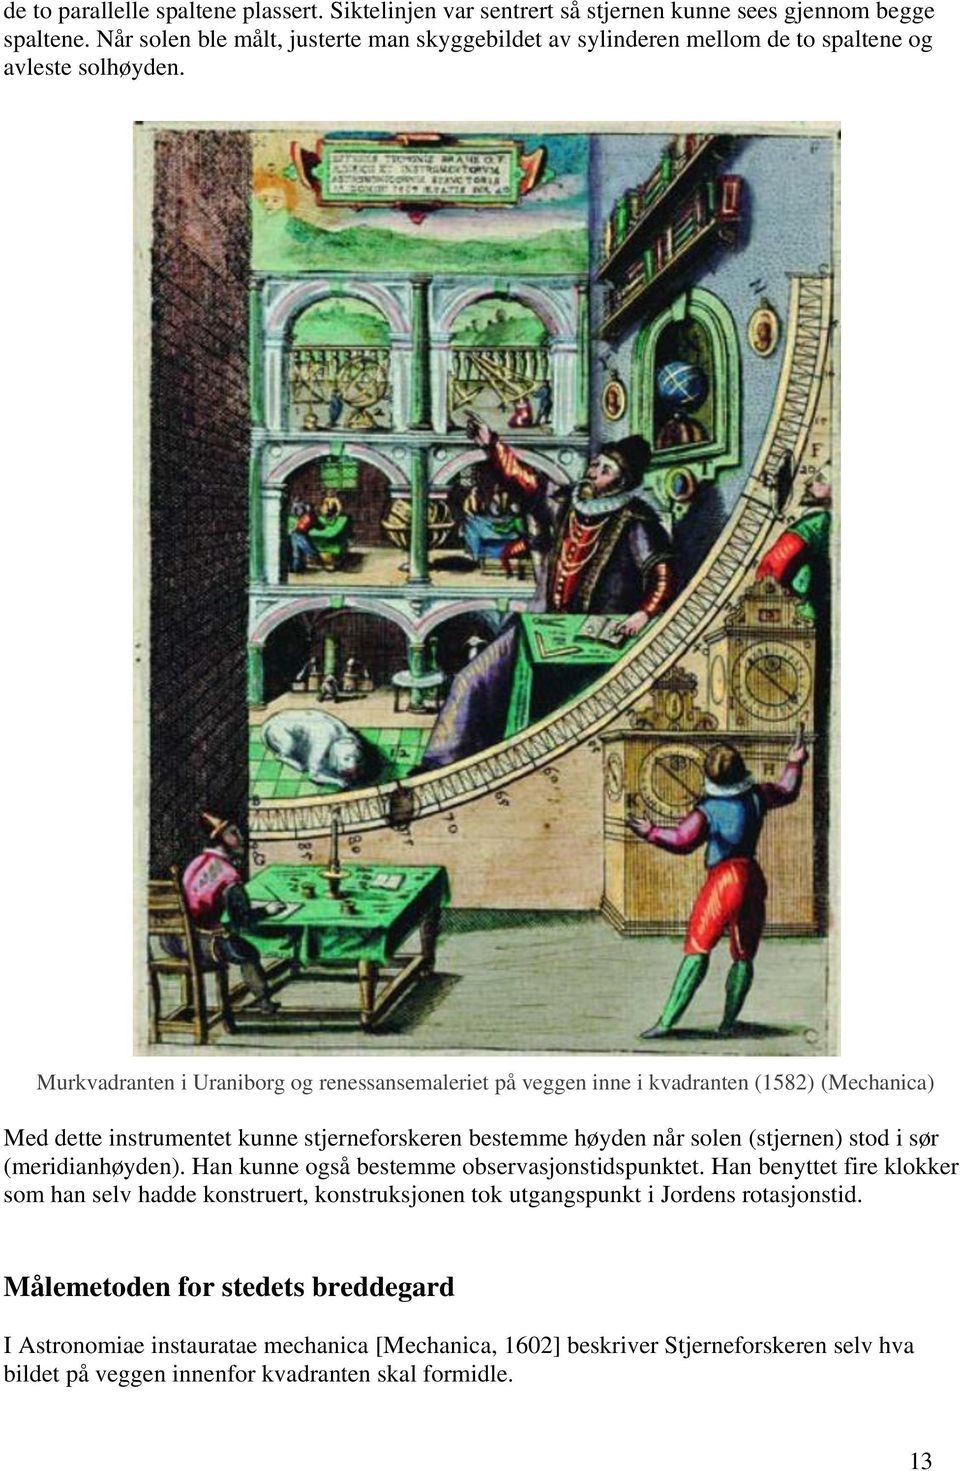 Murkvadranten i Uraniborg og renessansemaleriet på veggen inne i kvadranten (1582) (Mechanica) Med dette instrumentet kunne stjerneforskeren bestemme høyden når solen (stjernen) stod i sør